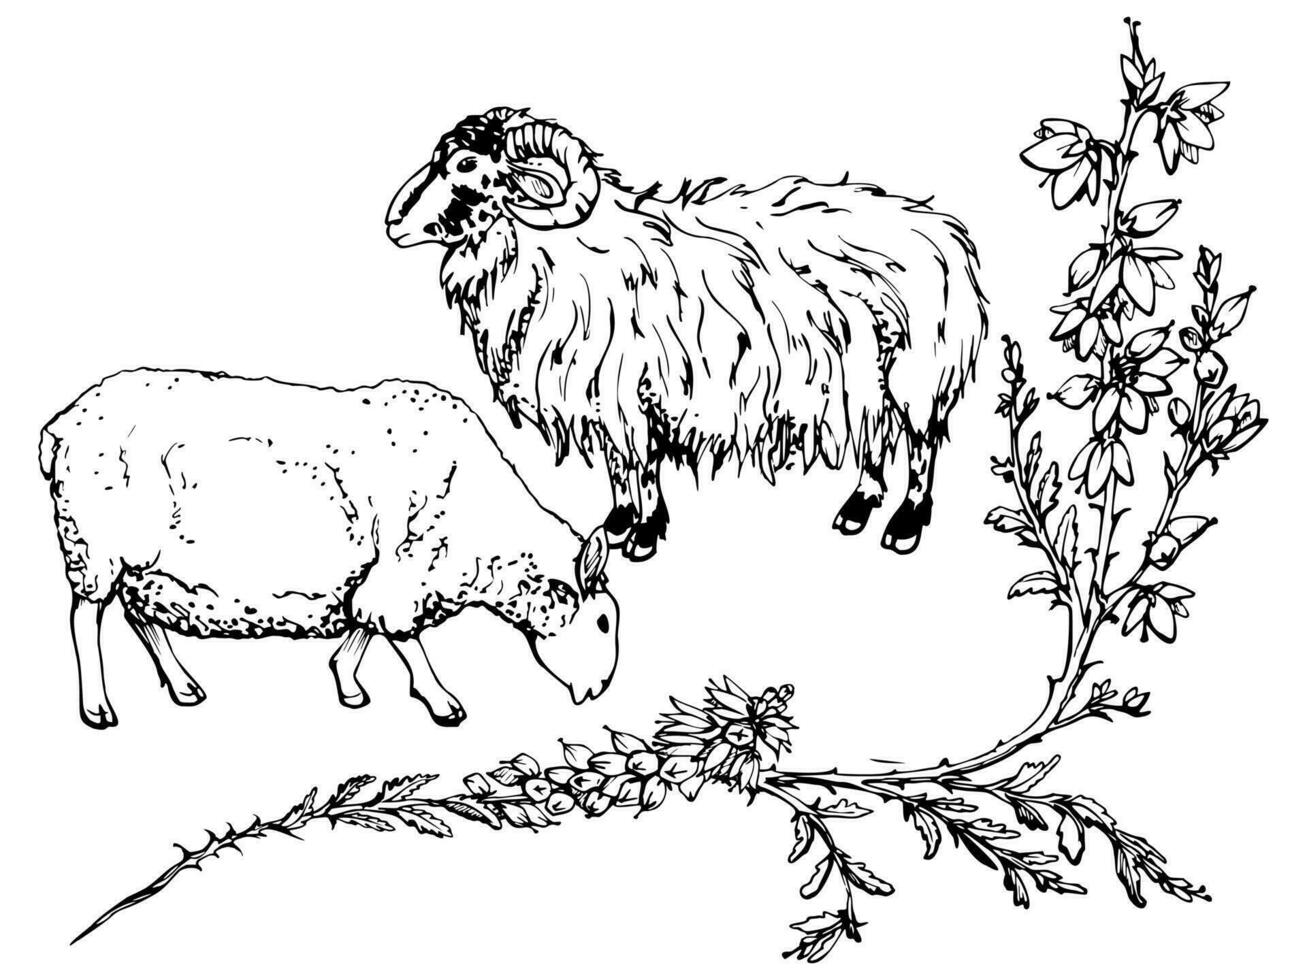 inkt hand- getrokken vector schetsen. begrazing huiselijk dier schapen vee met heide tak, bloemen bladeren en knoppen, natuur. ontwerp voor toerisme, reis, brochure, bruiloft, gids, afdrukken, kaart, tatoeëren.